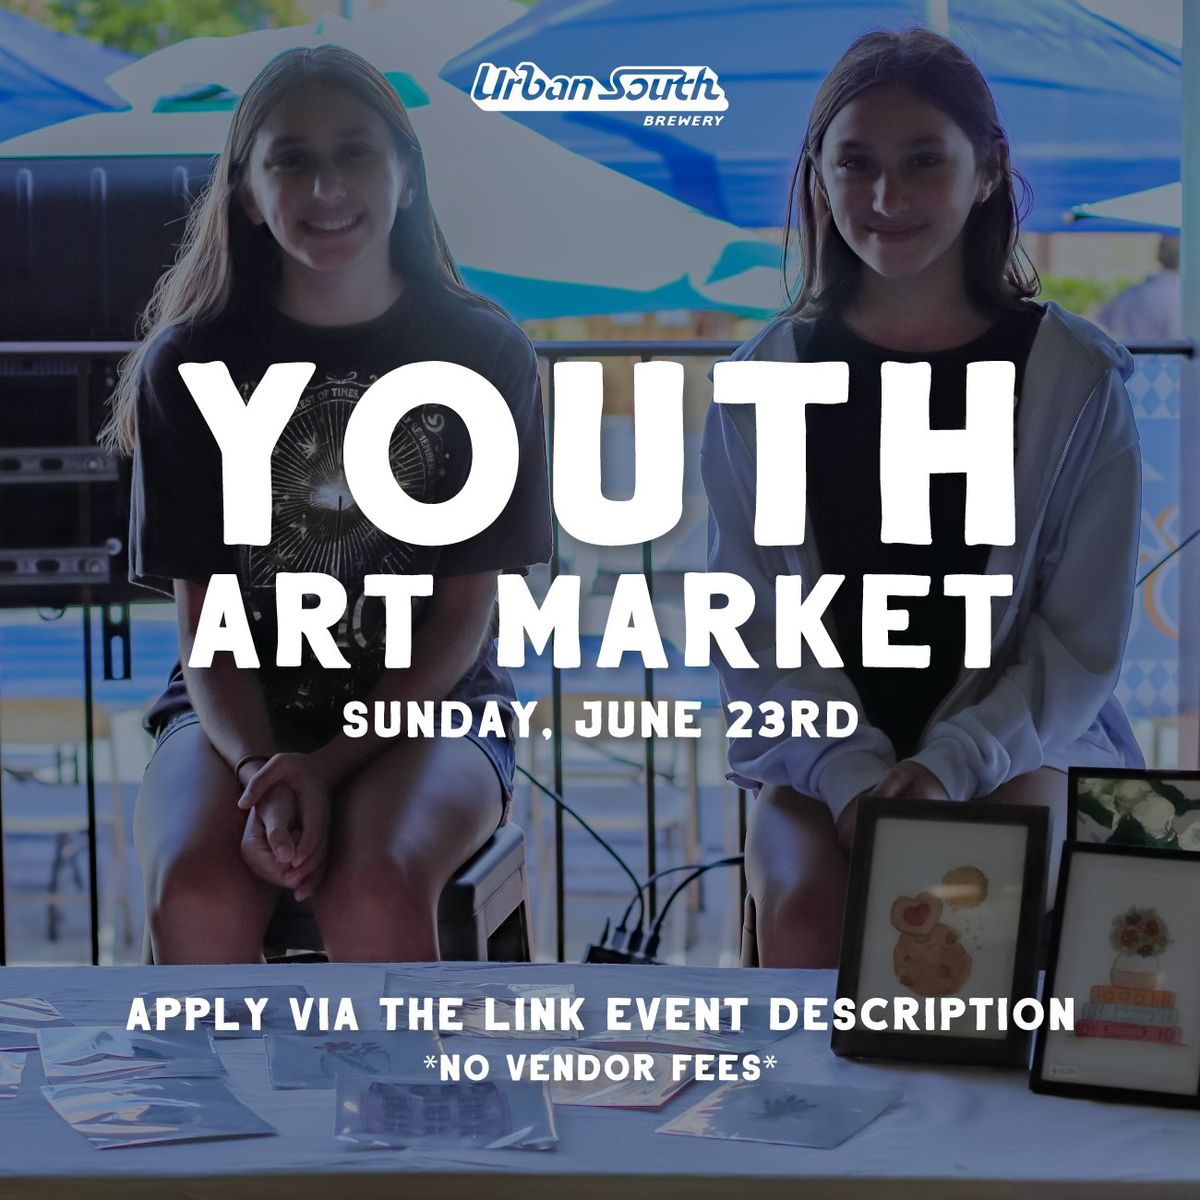 Youth Art Market at Urban South!